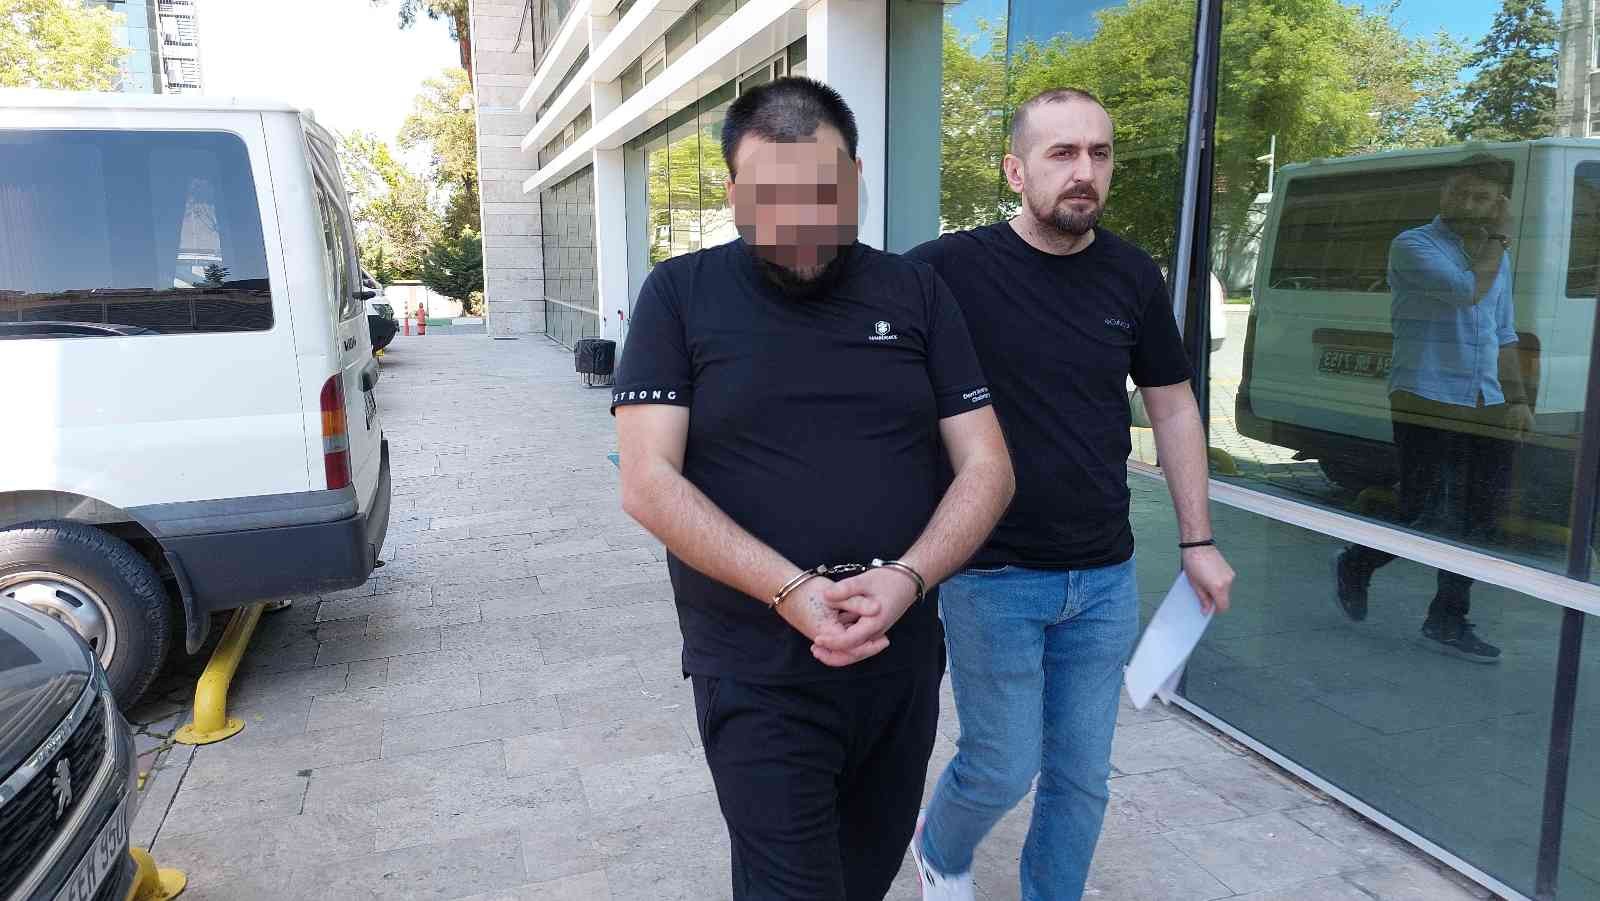 6 Bin 403 Adet Sentetik Ecza İle Yakalanan Şahıs Tutuklandı